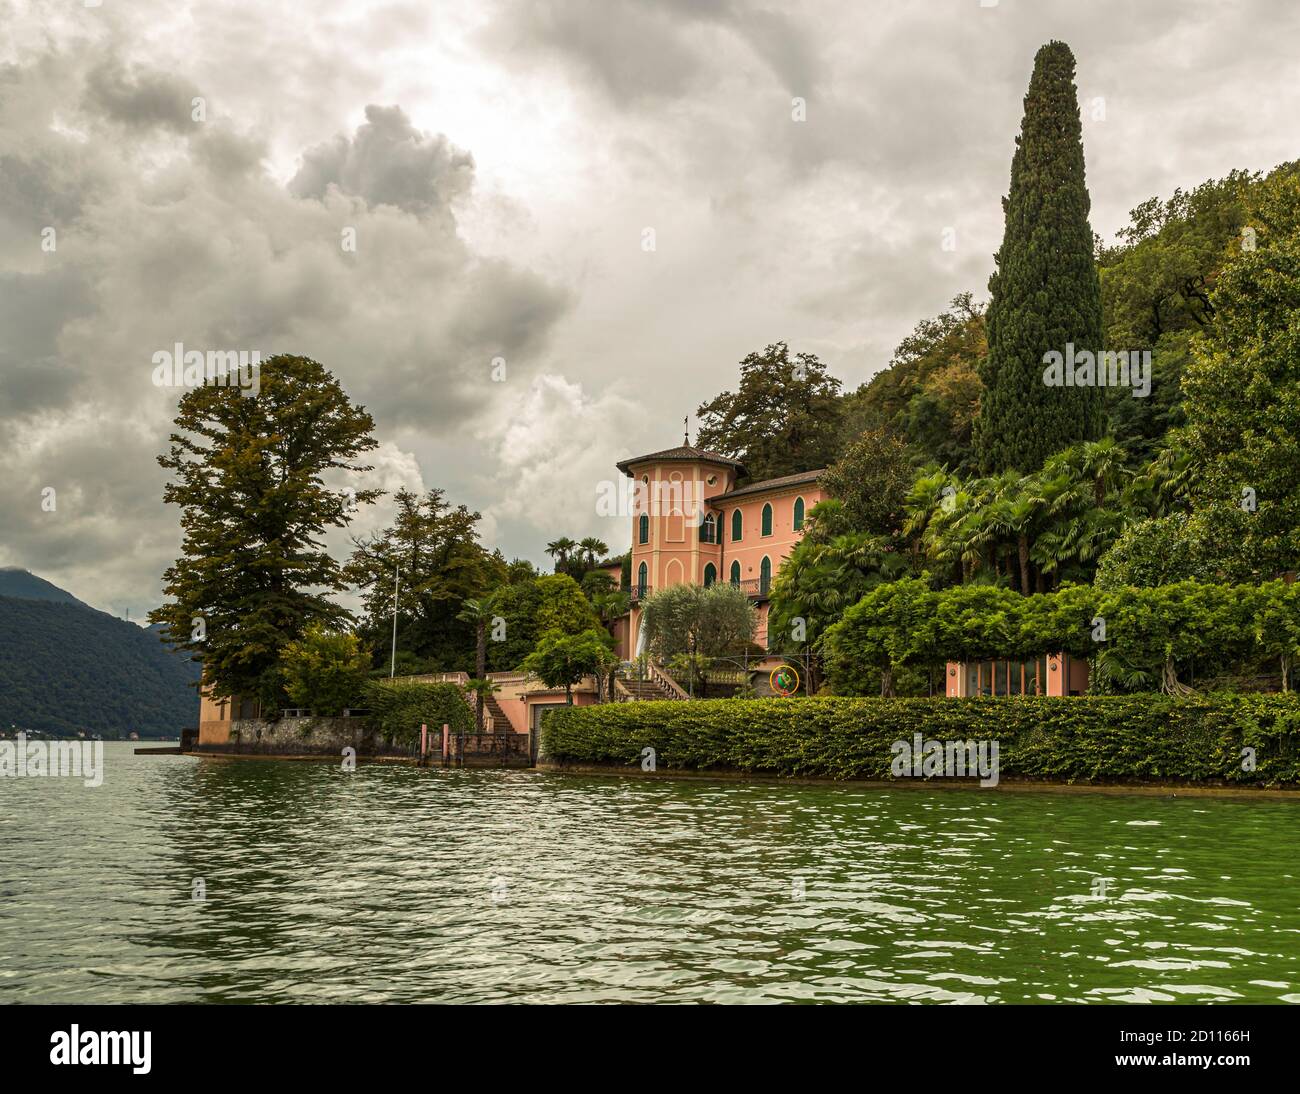 The town of Morcote on Lake Lugano in Ticino, Circolo di Carona, Switzerland Stock Photo